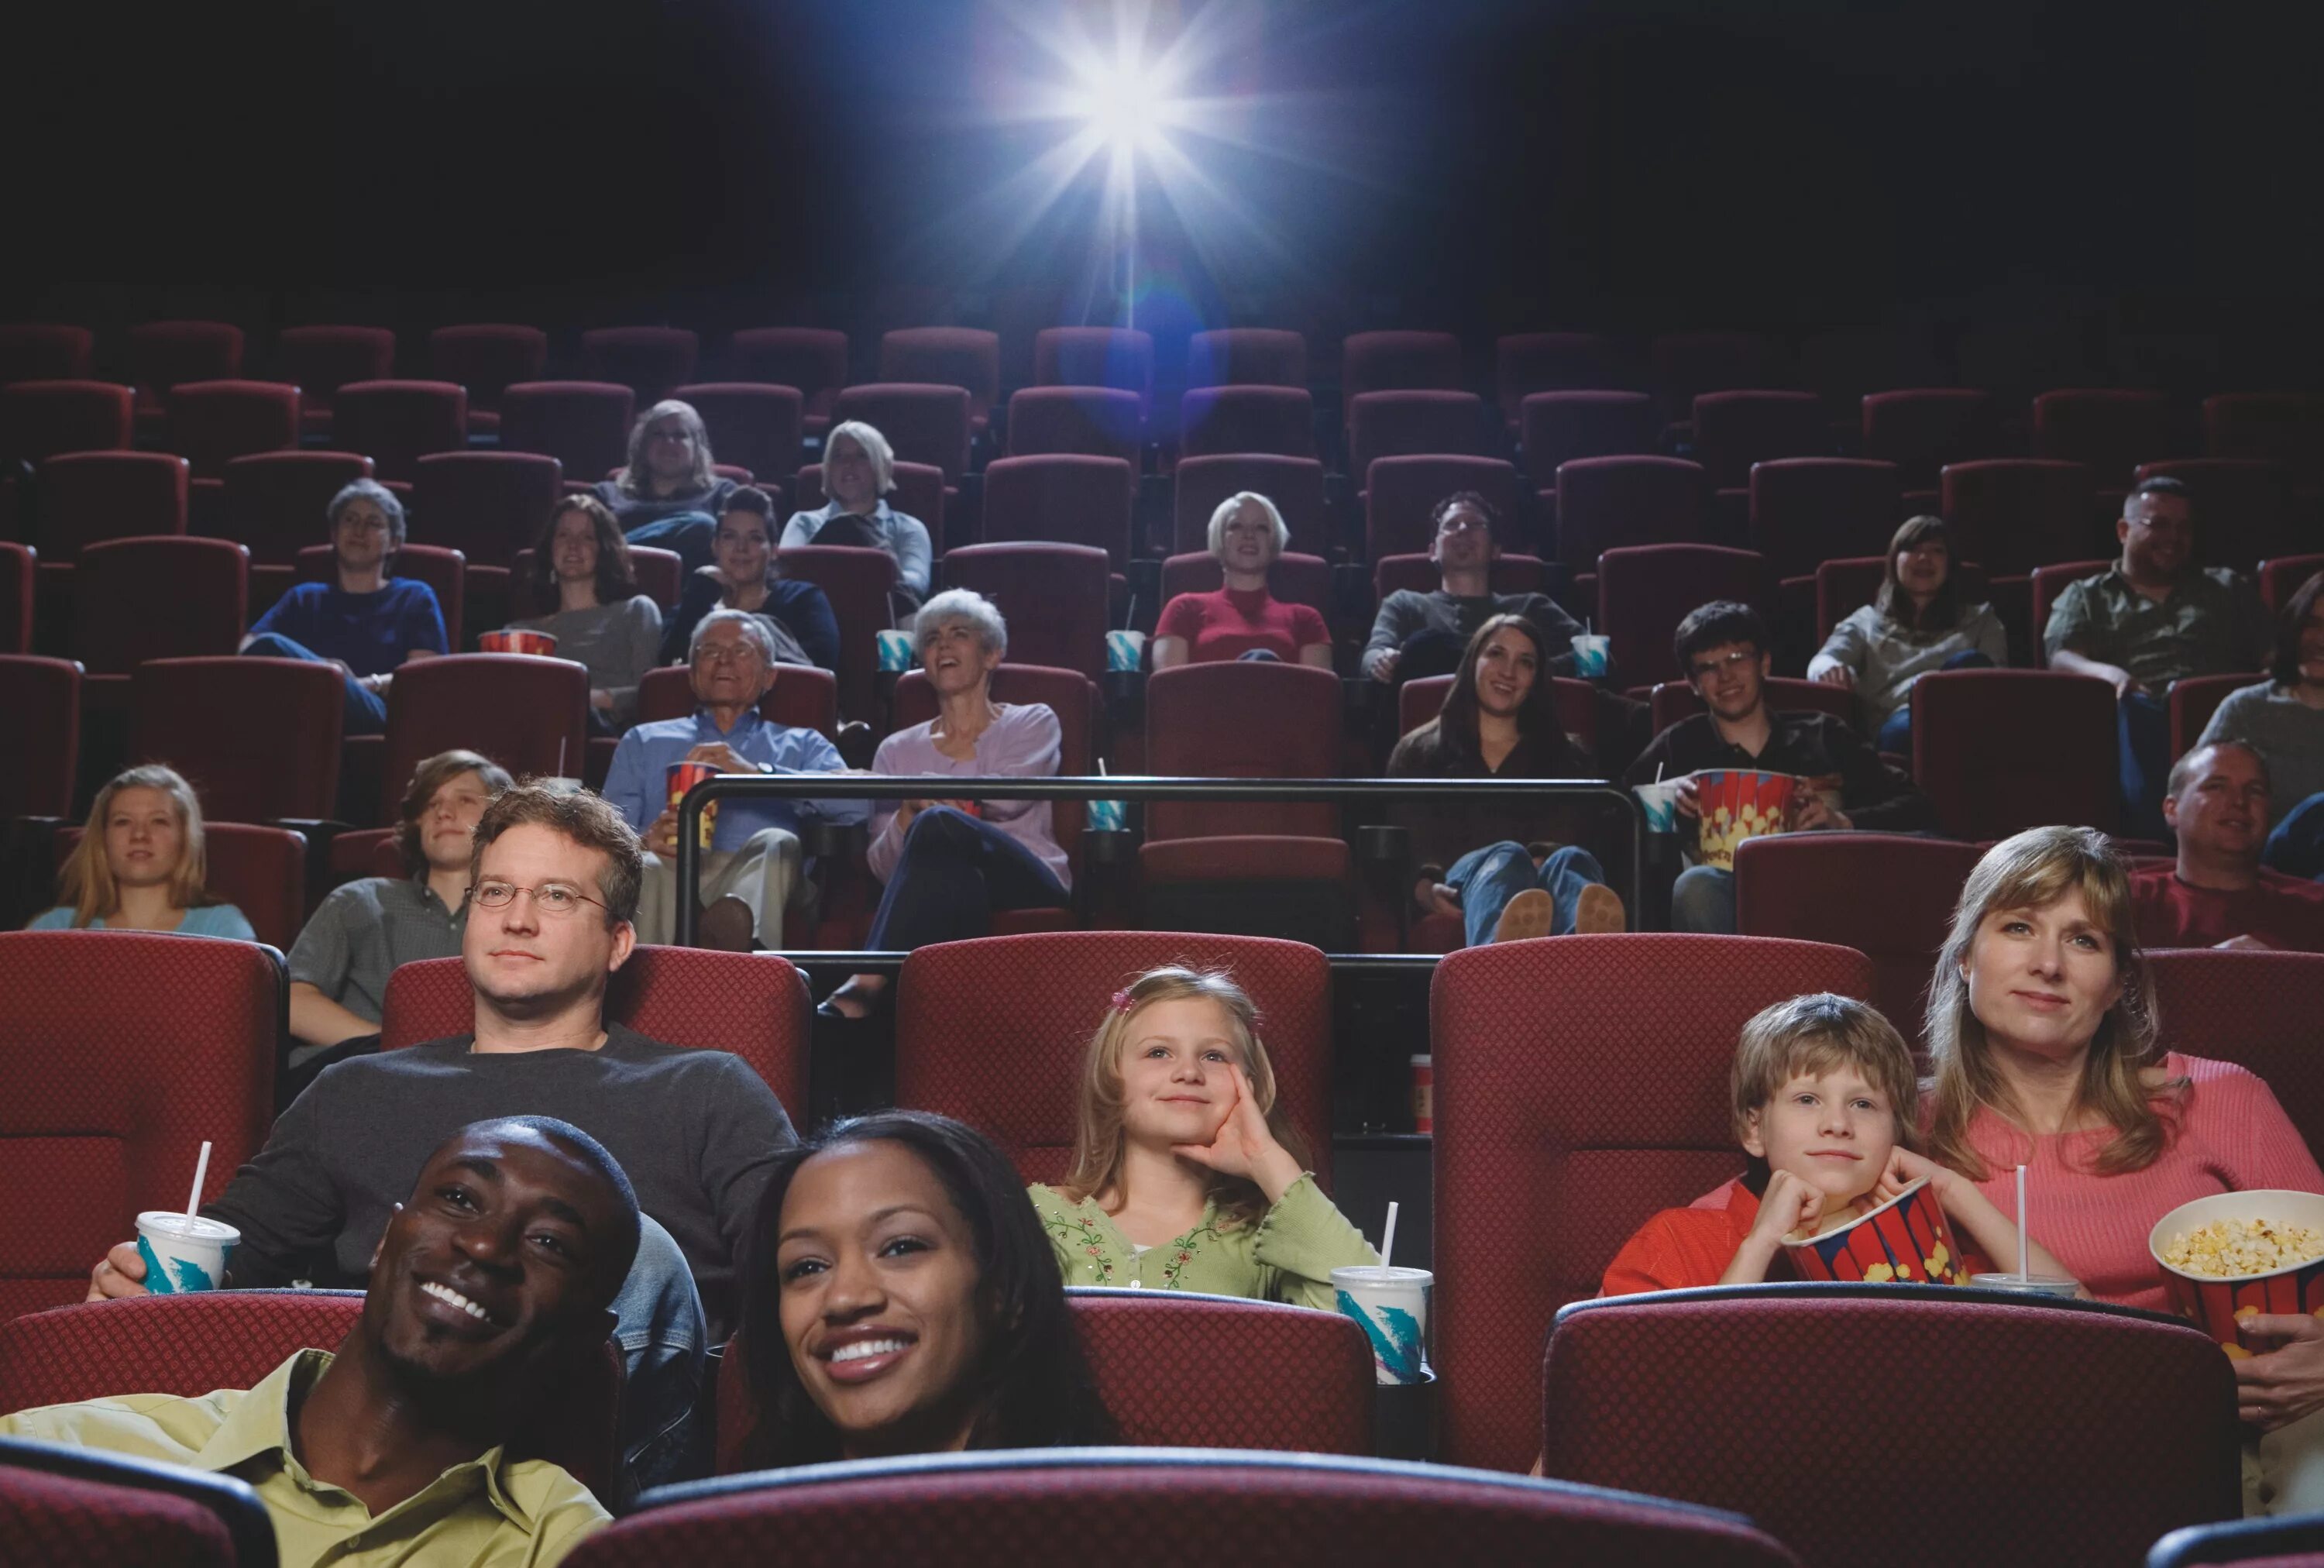 Зал кинотеатра с людьми. Люди в кинотеатре. Зрители в кинотеатре. Зрительный зал кинотеатра.